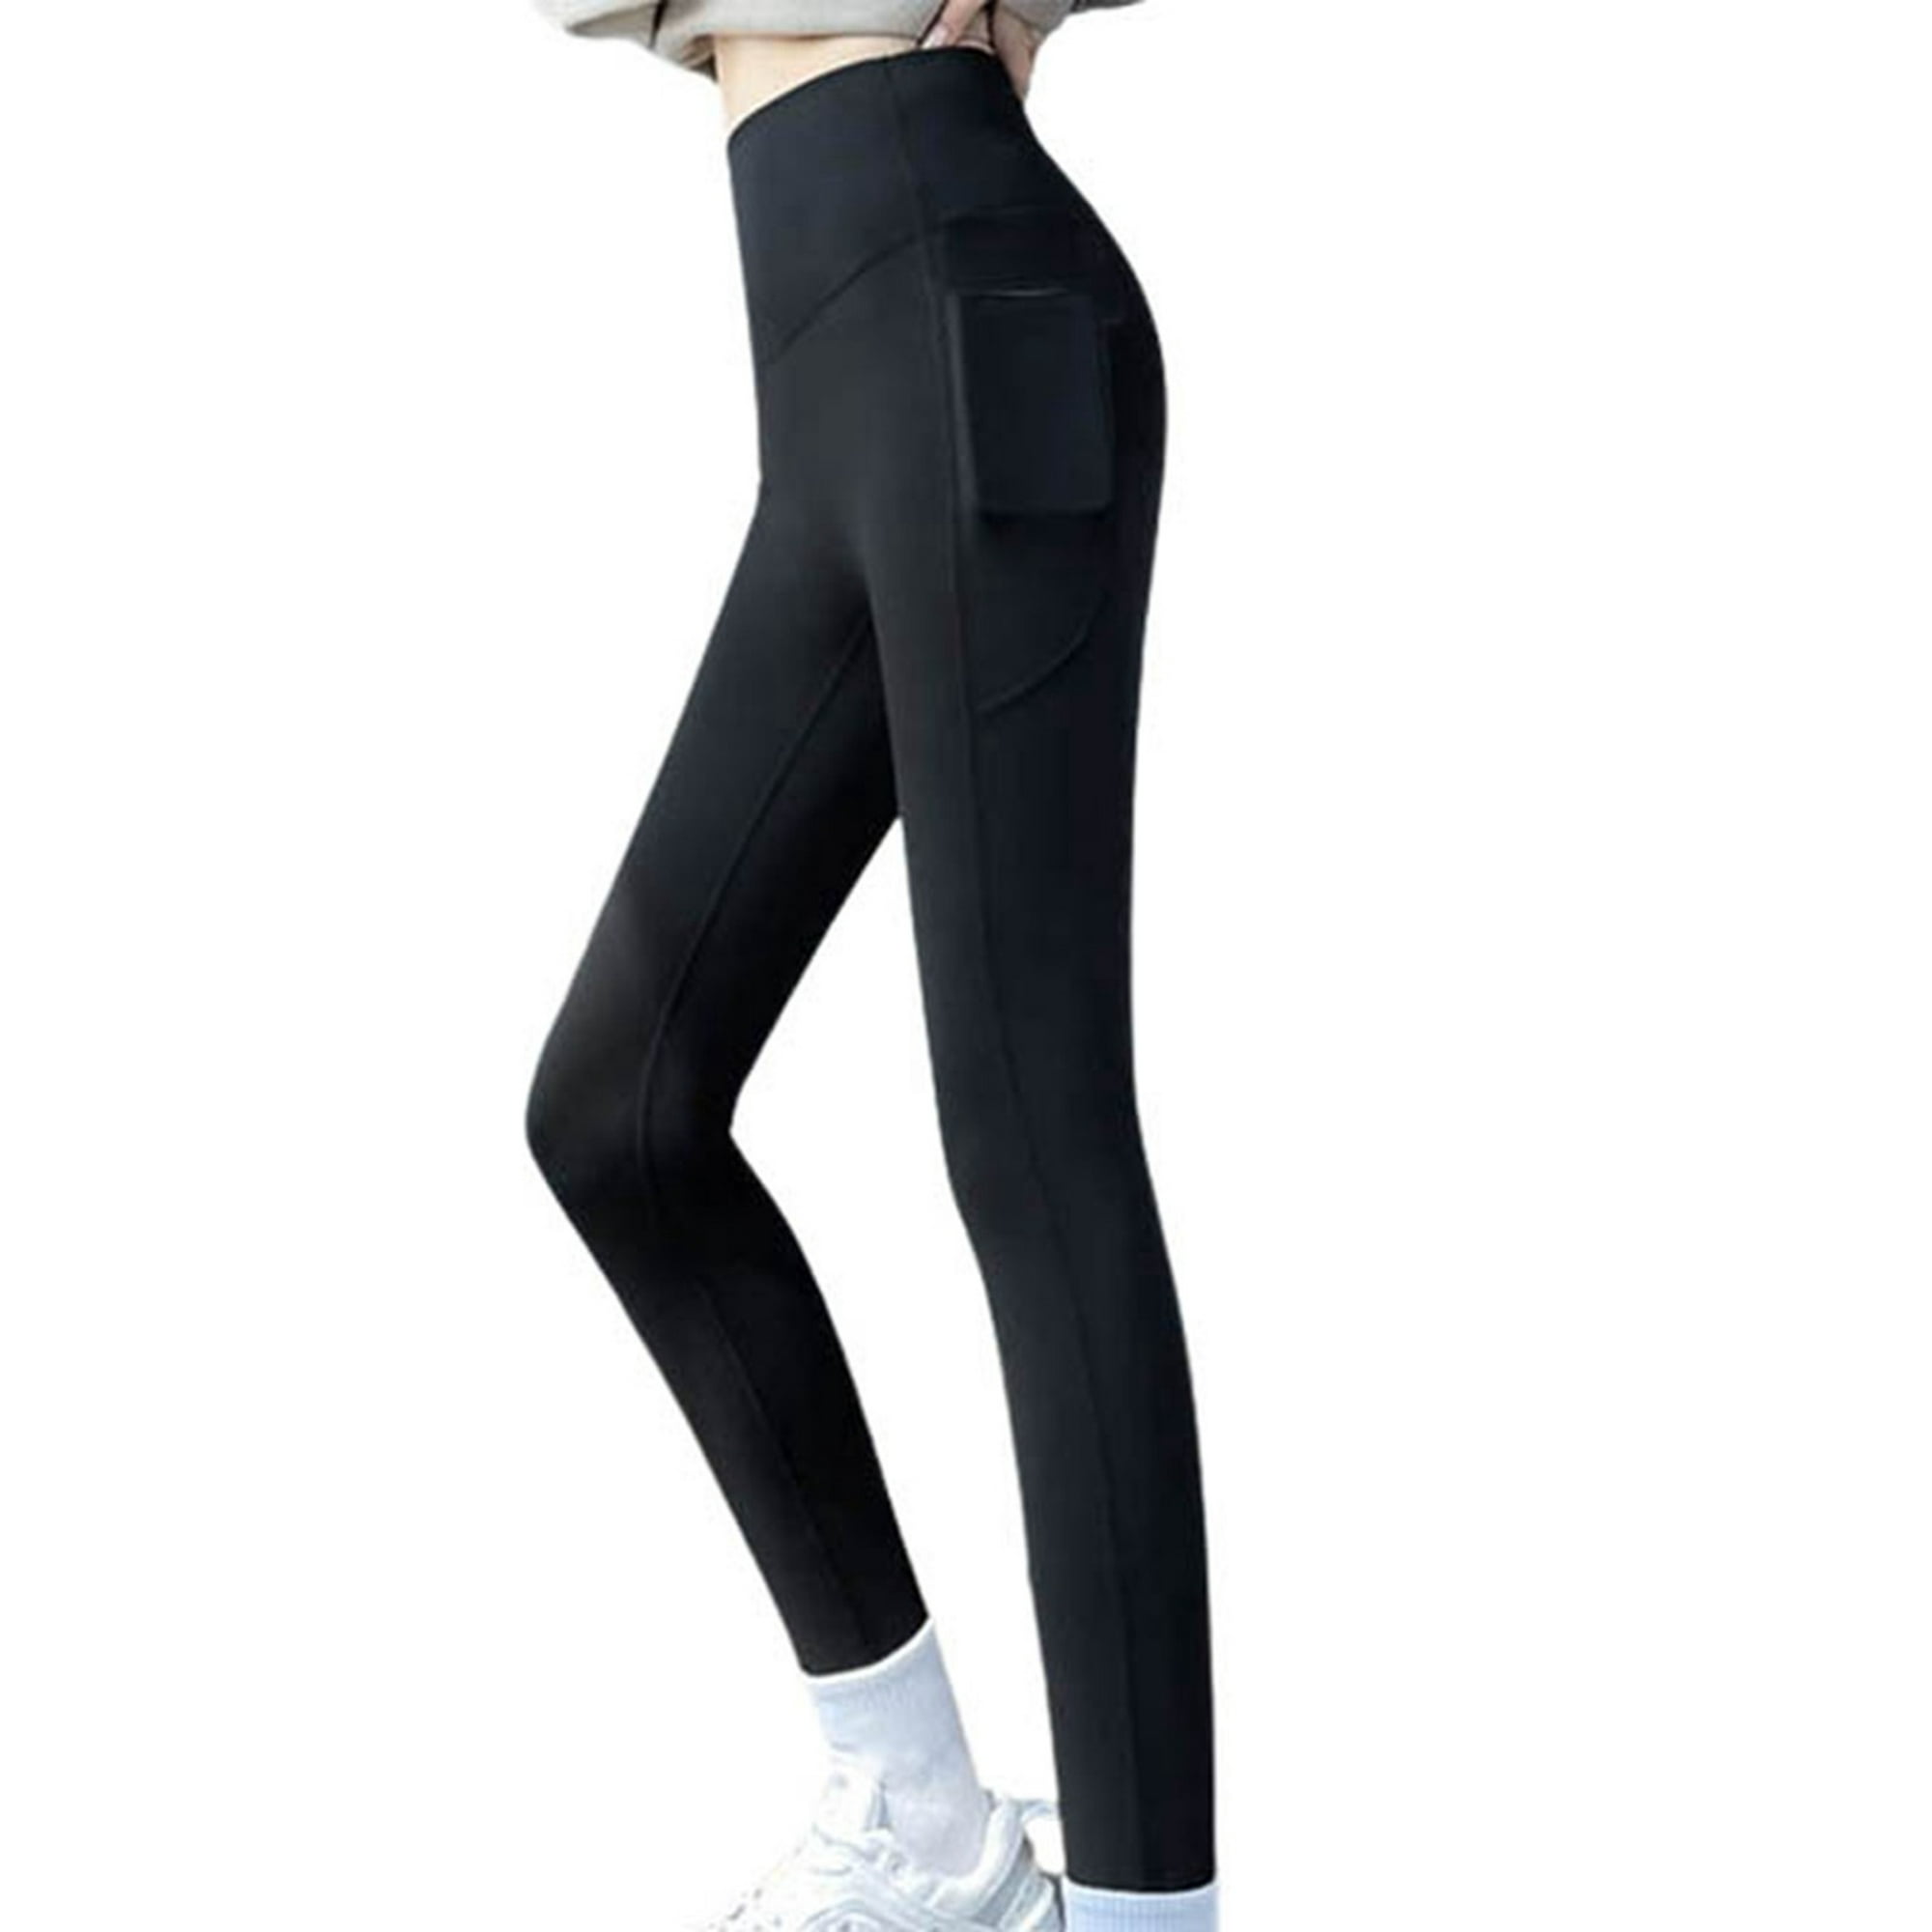 Gibobby Yoga leggings Pantalones de cintura de malla para mujer, mallas  elásticas altas, capris depo Gibobby